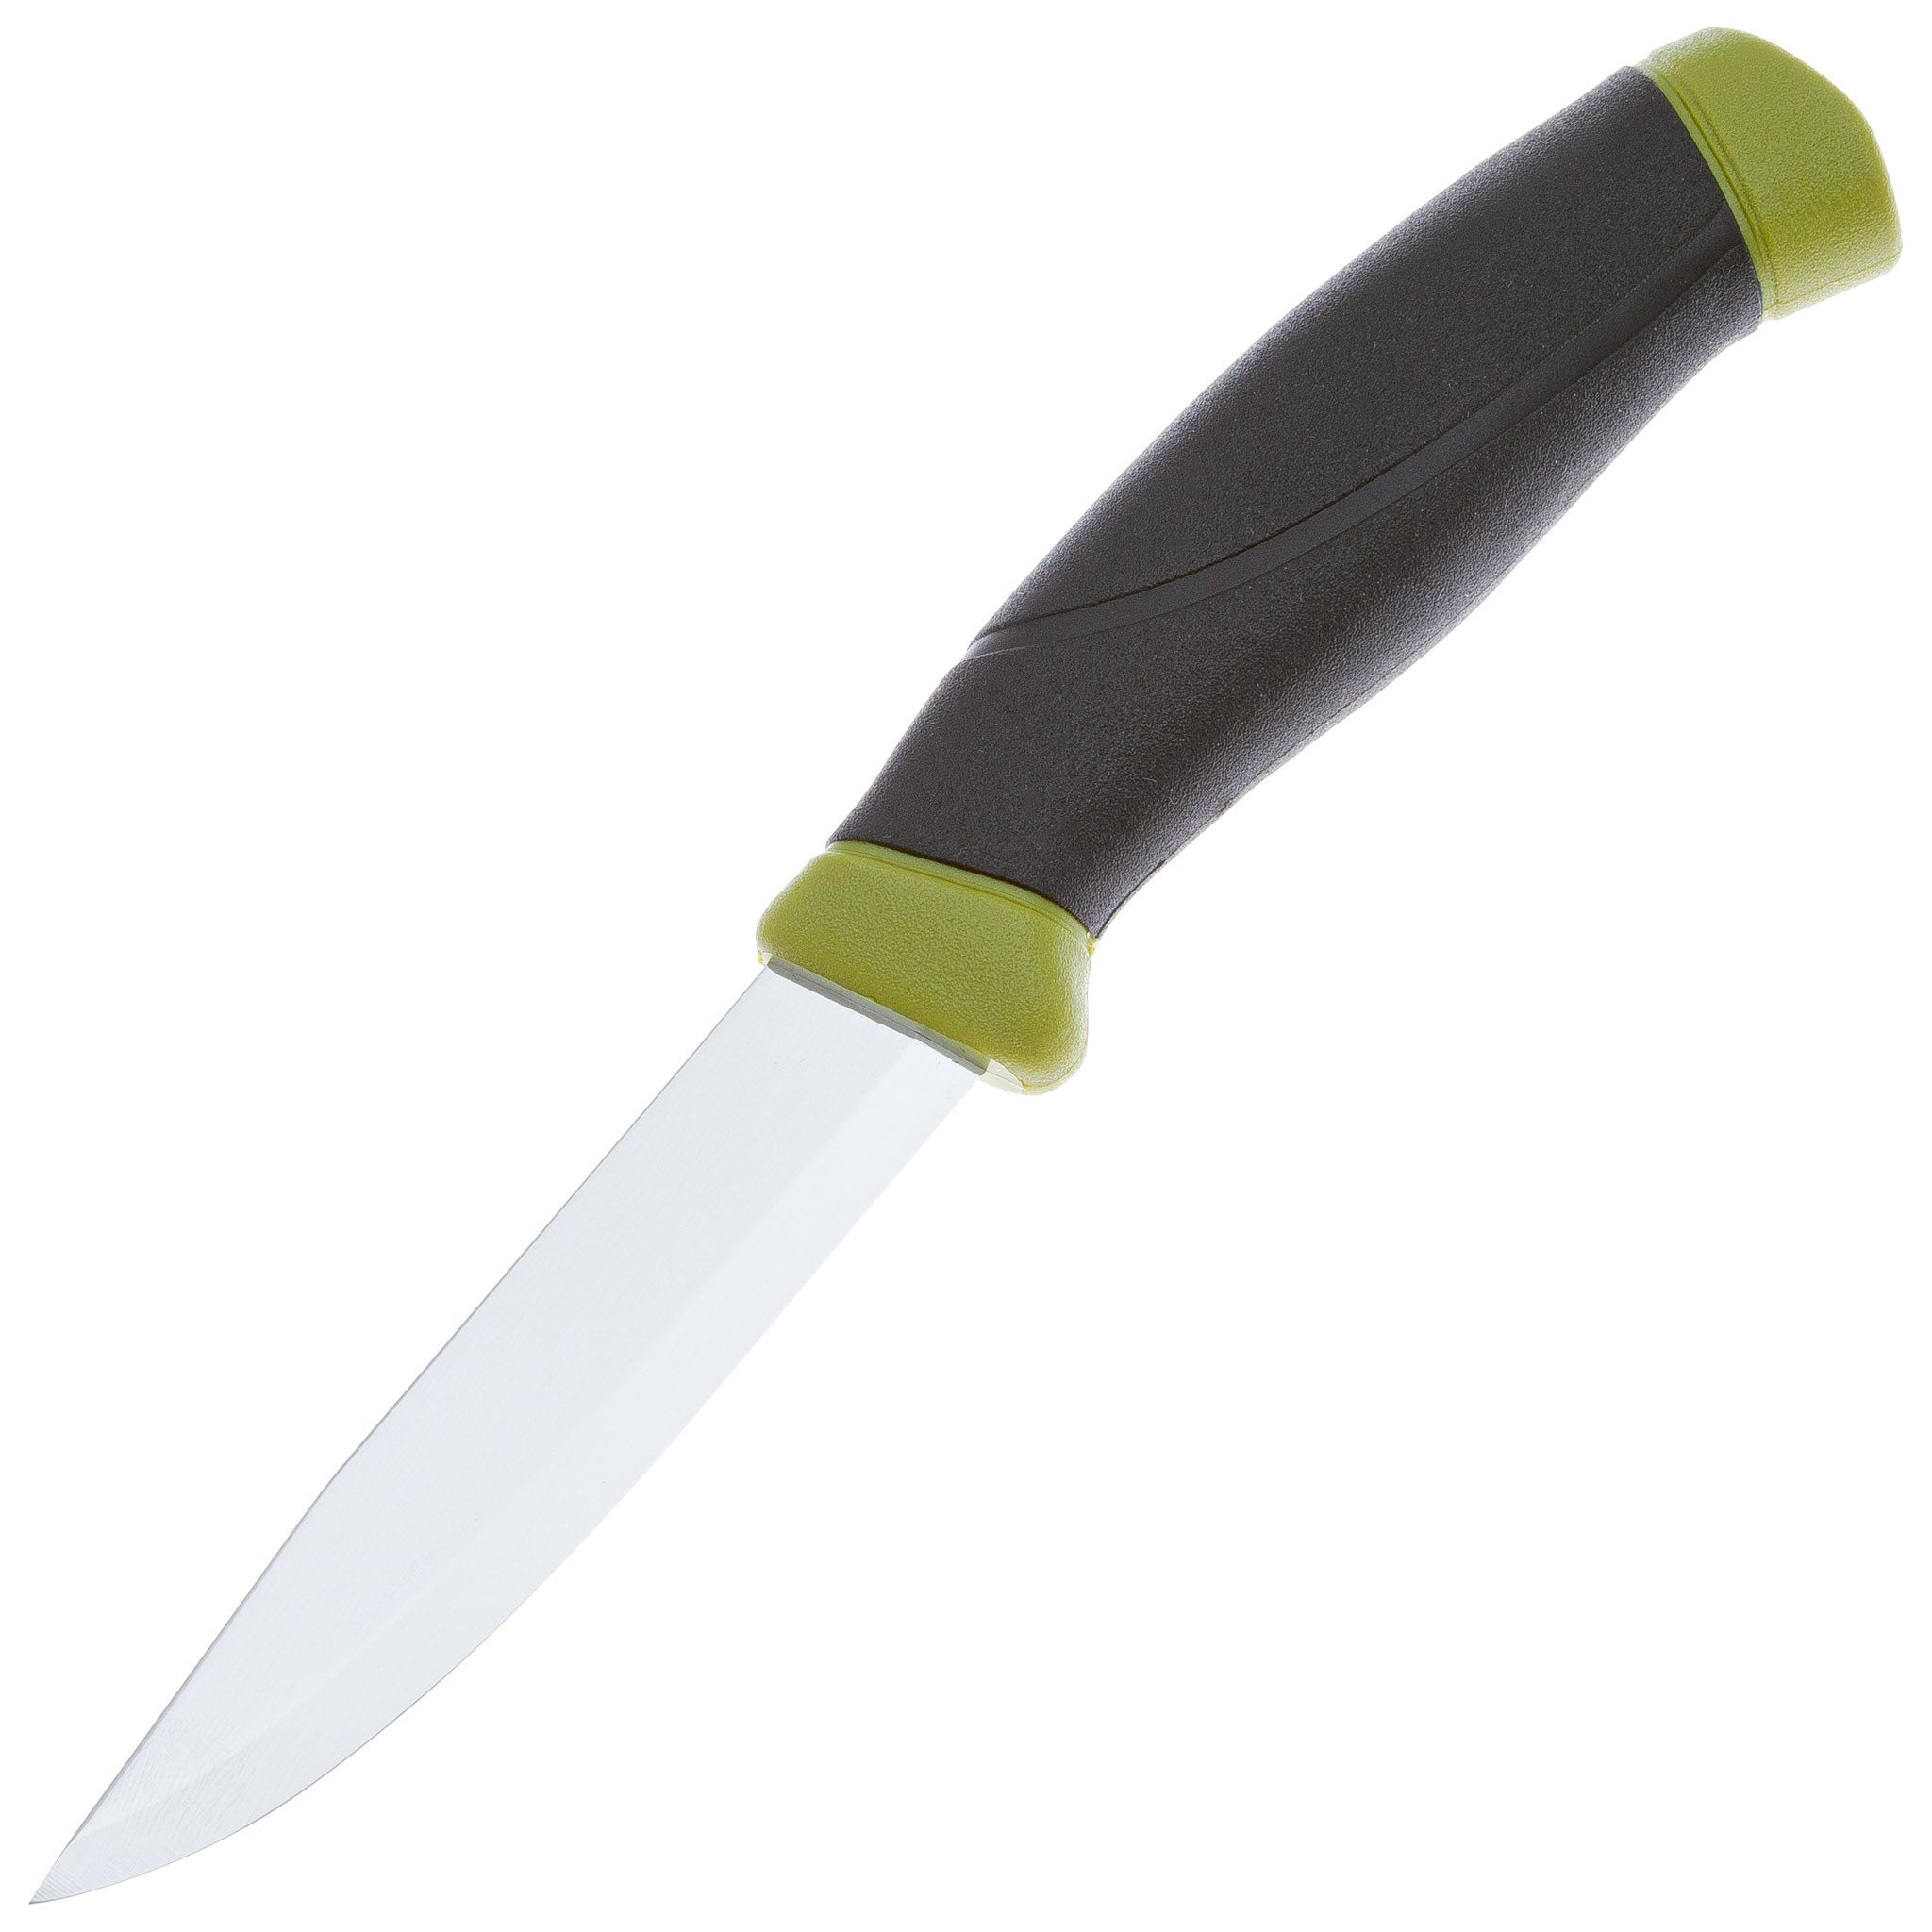 Нож с фиксированным лезвием Morakniv Companion, сталь Sandvik 12C27, рукоять резина, olive green нож sanitoo с фиксированным трапециевидным лезвием